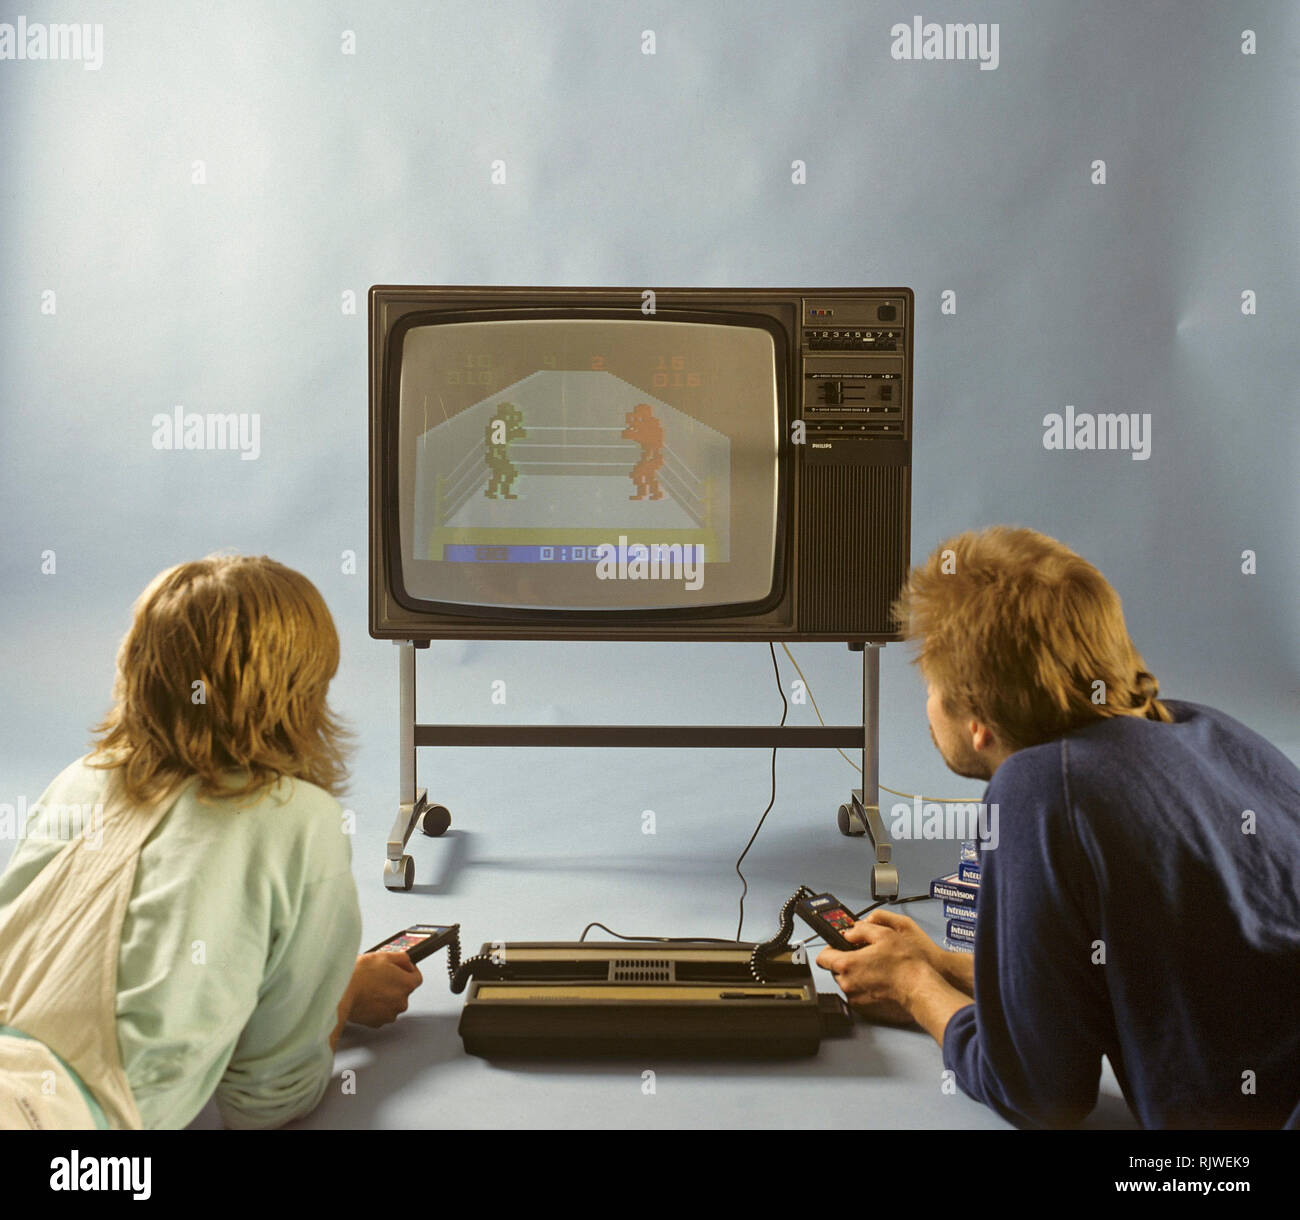 Accueil Les jeux vidéos dans les années 80. Une console de jeux vidéo accueil de Intellivison publié par Mattel Electronics en 1979. Sur la photo deux personnes jouant un jeu de boxe sur un téléviseur. Banque D'Images